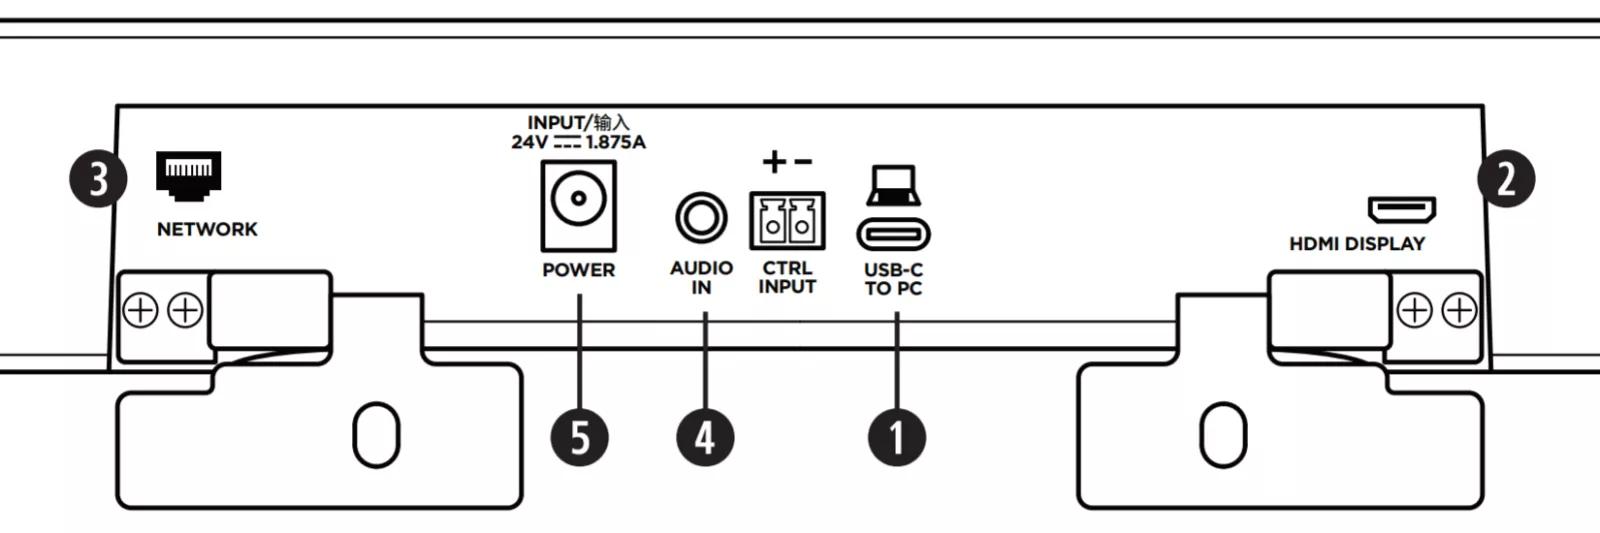 vb1 tilslutningspanel. Netværk, strøm, lydindgang, styreindgang, USB-C, HDMI-display 